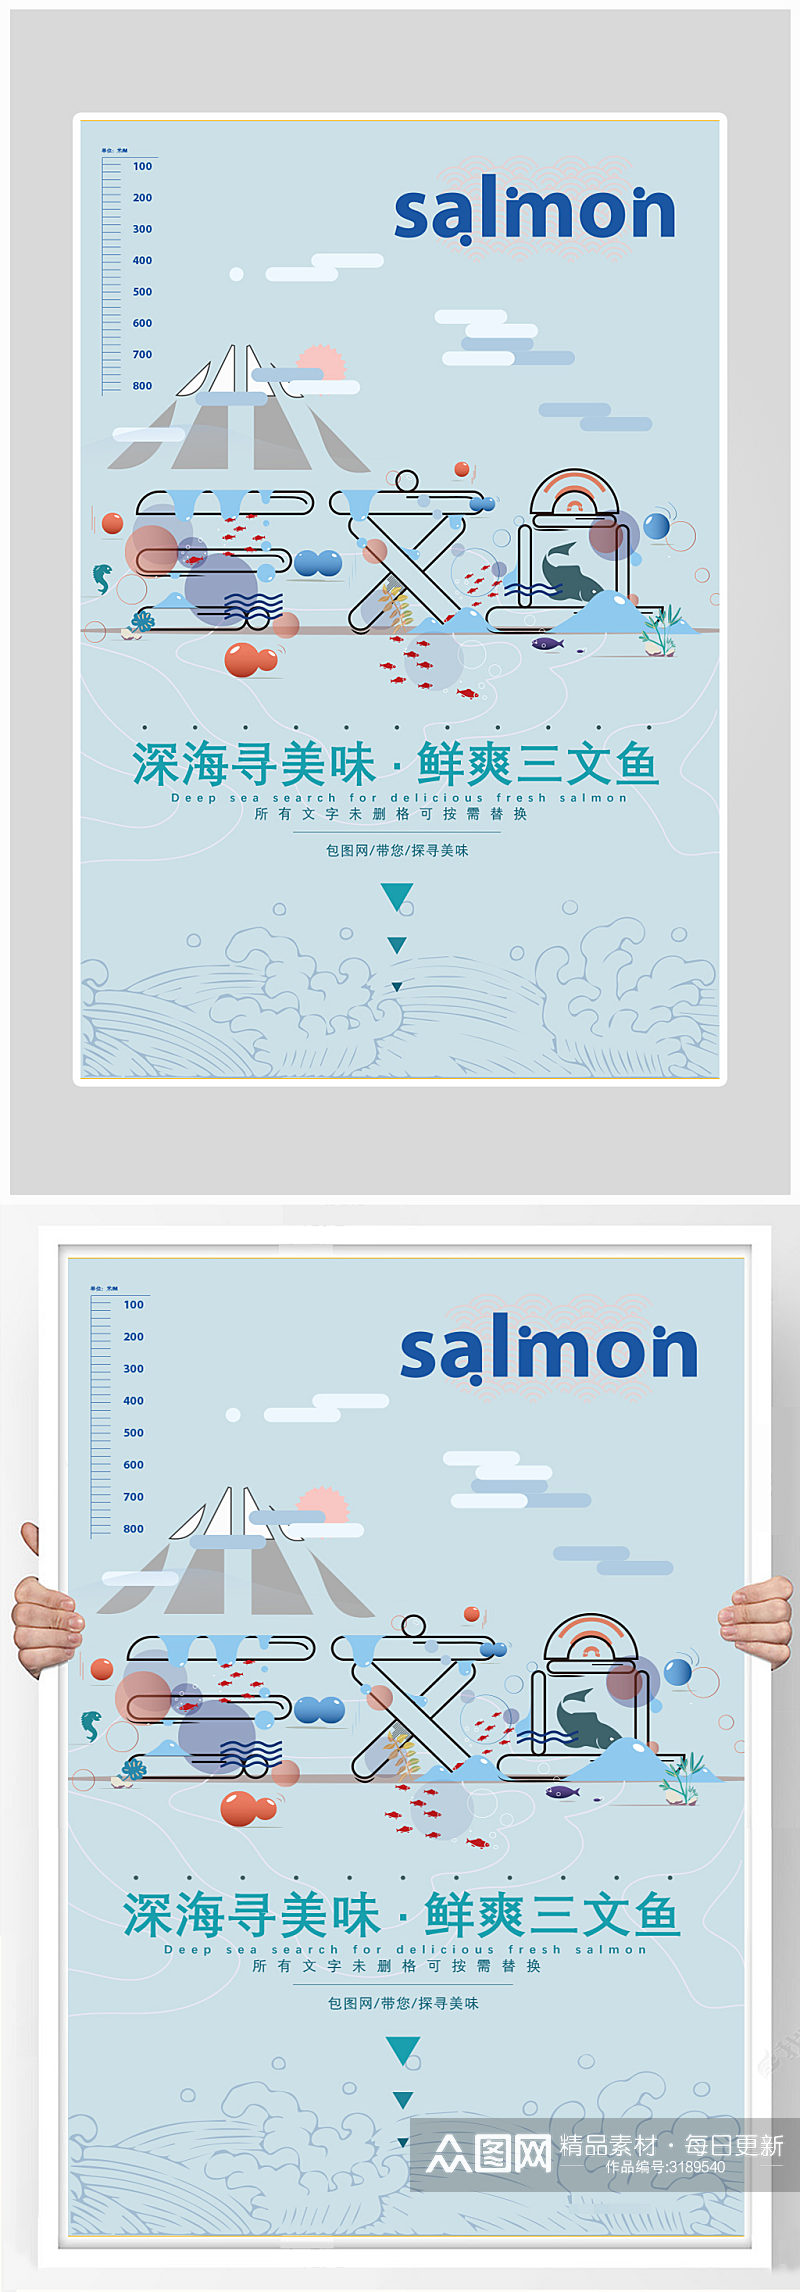 创意简约三文鱼美食海报设计素材